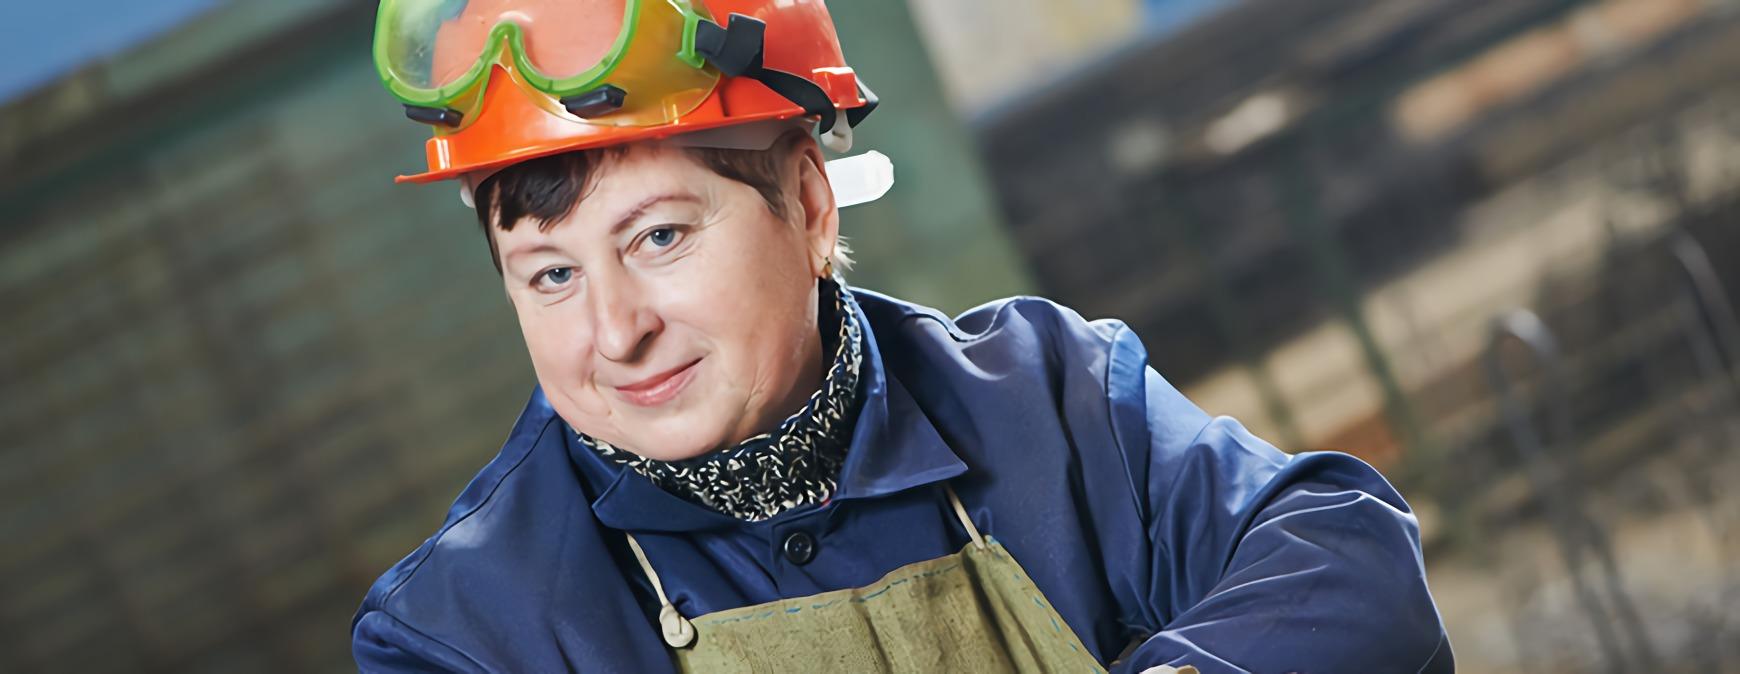 female welder in hard hat